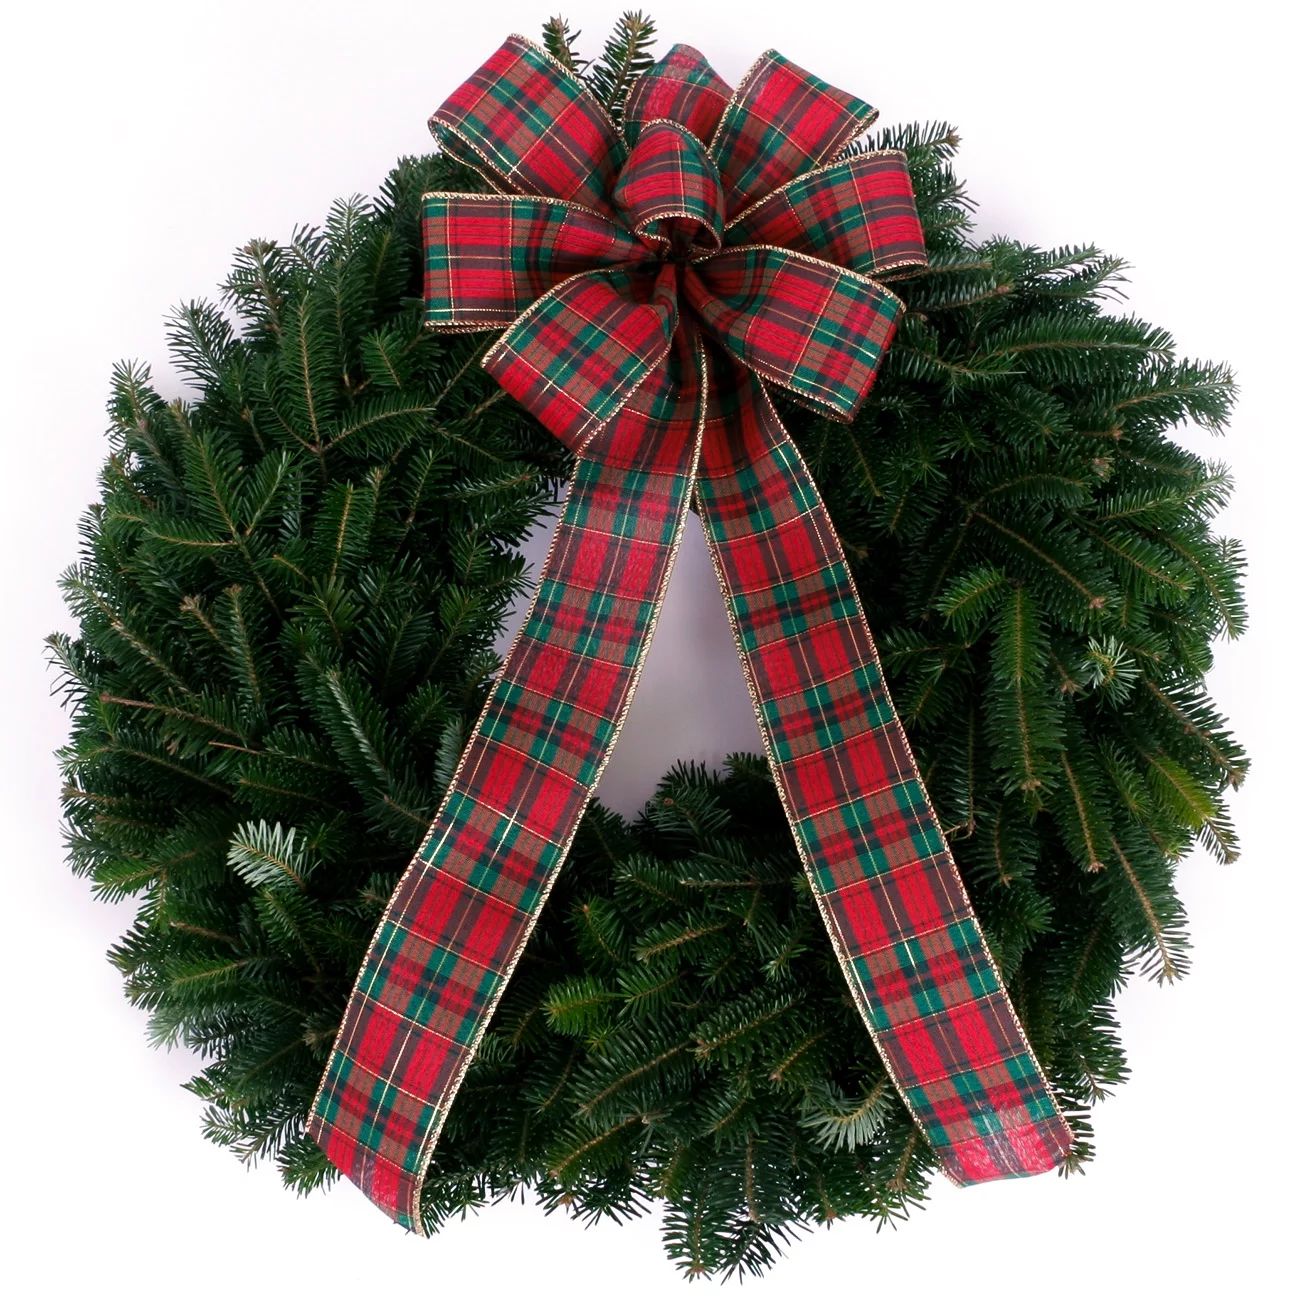 Van Zyverden Fir Wreath, 24" (Green) - Walmart.com | Walmart (US)